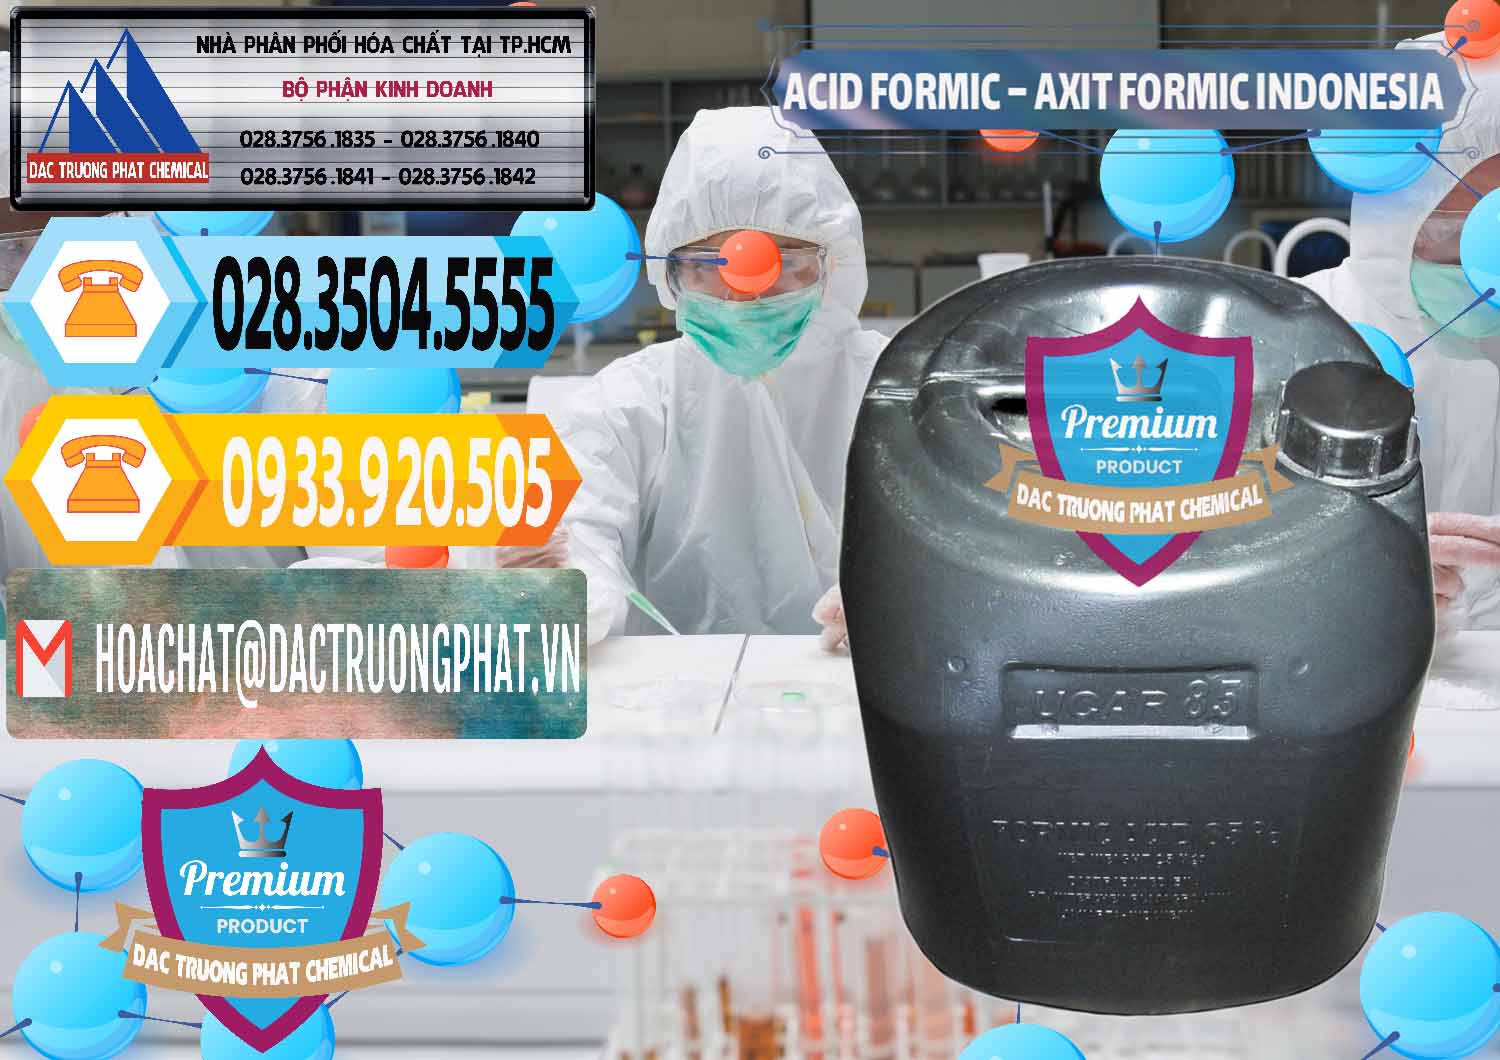 Nơi cung ứng - bán Acid Formic - Axit Formic Indonesia - 0026 - Công ty nhập khẩu & cung cấp hóa chất tại TP.HCM - hoachattayrua.net